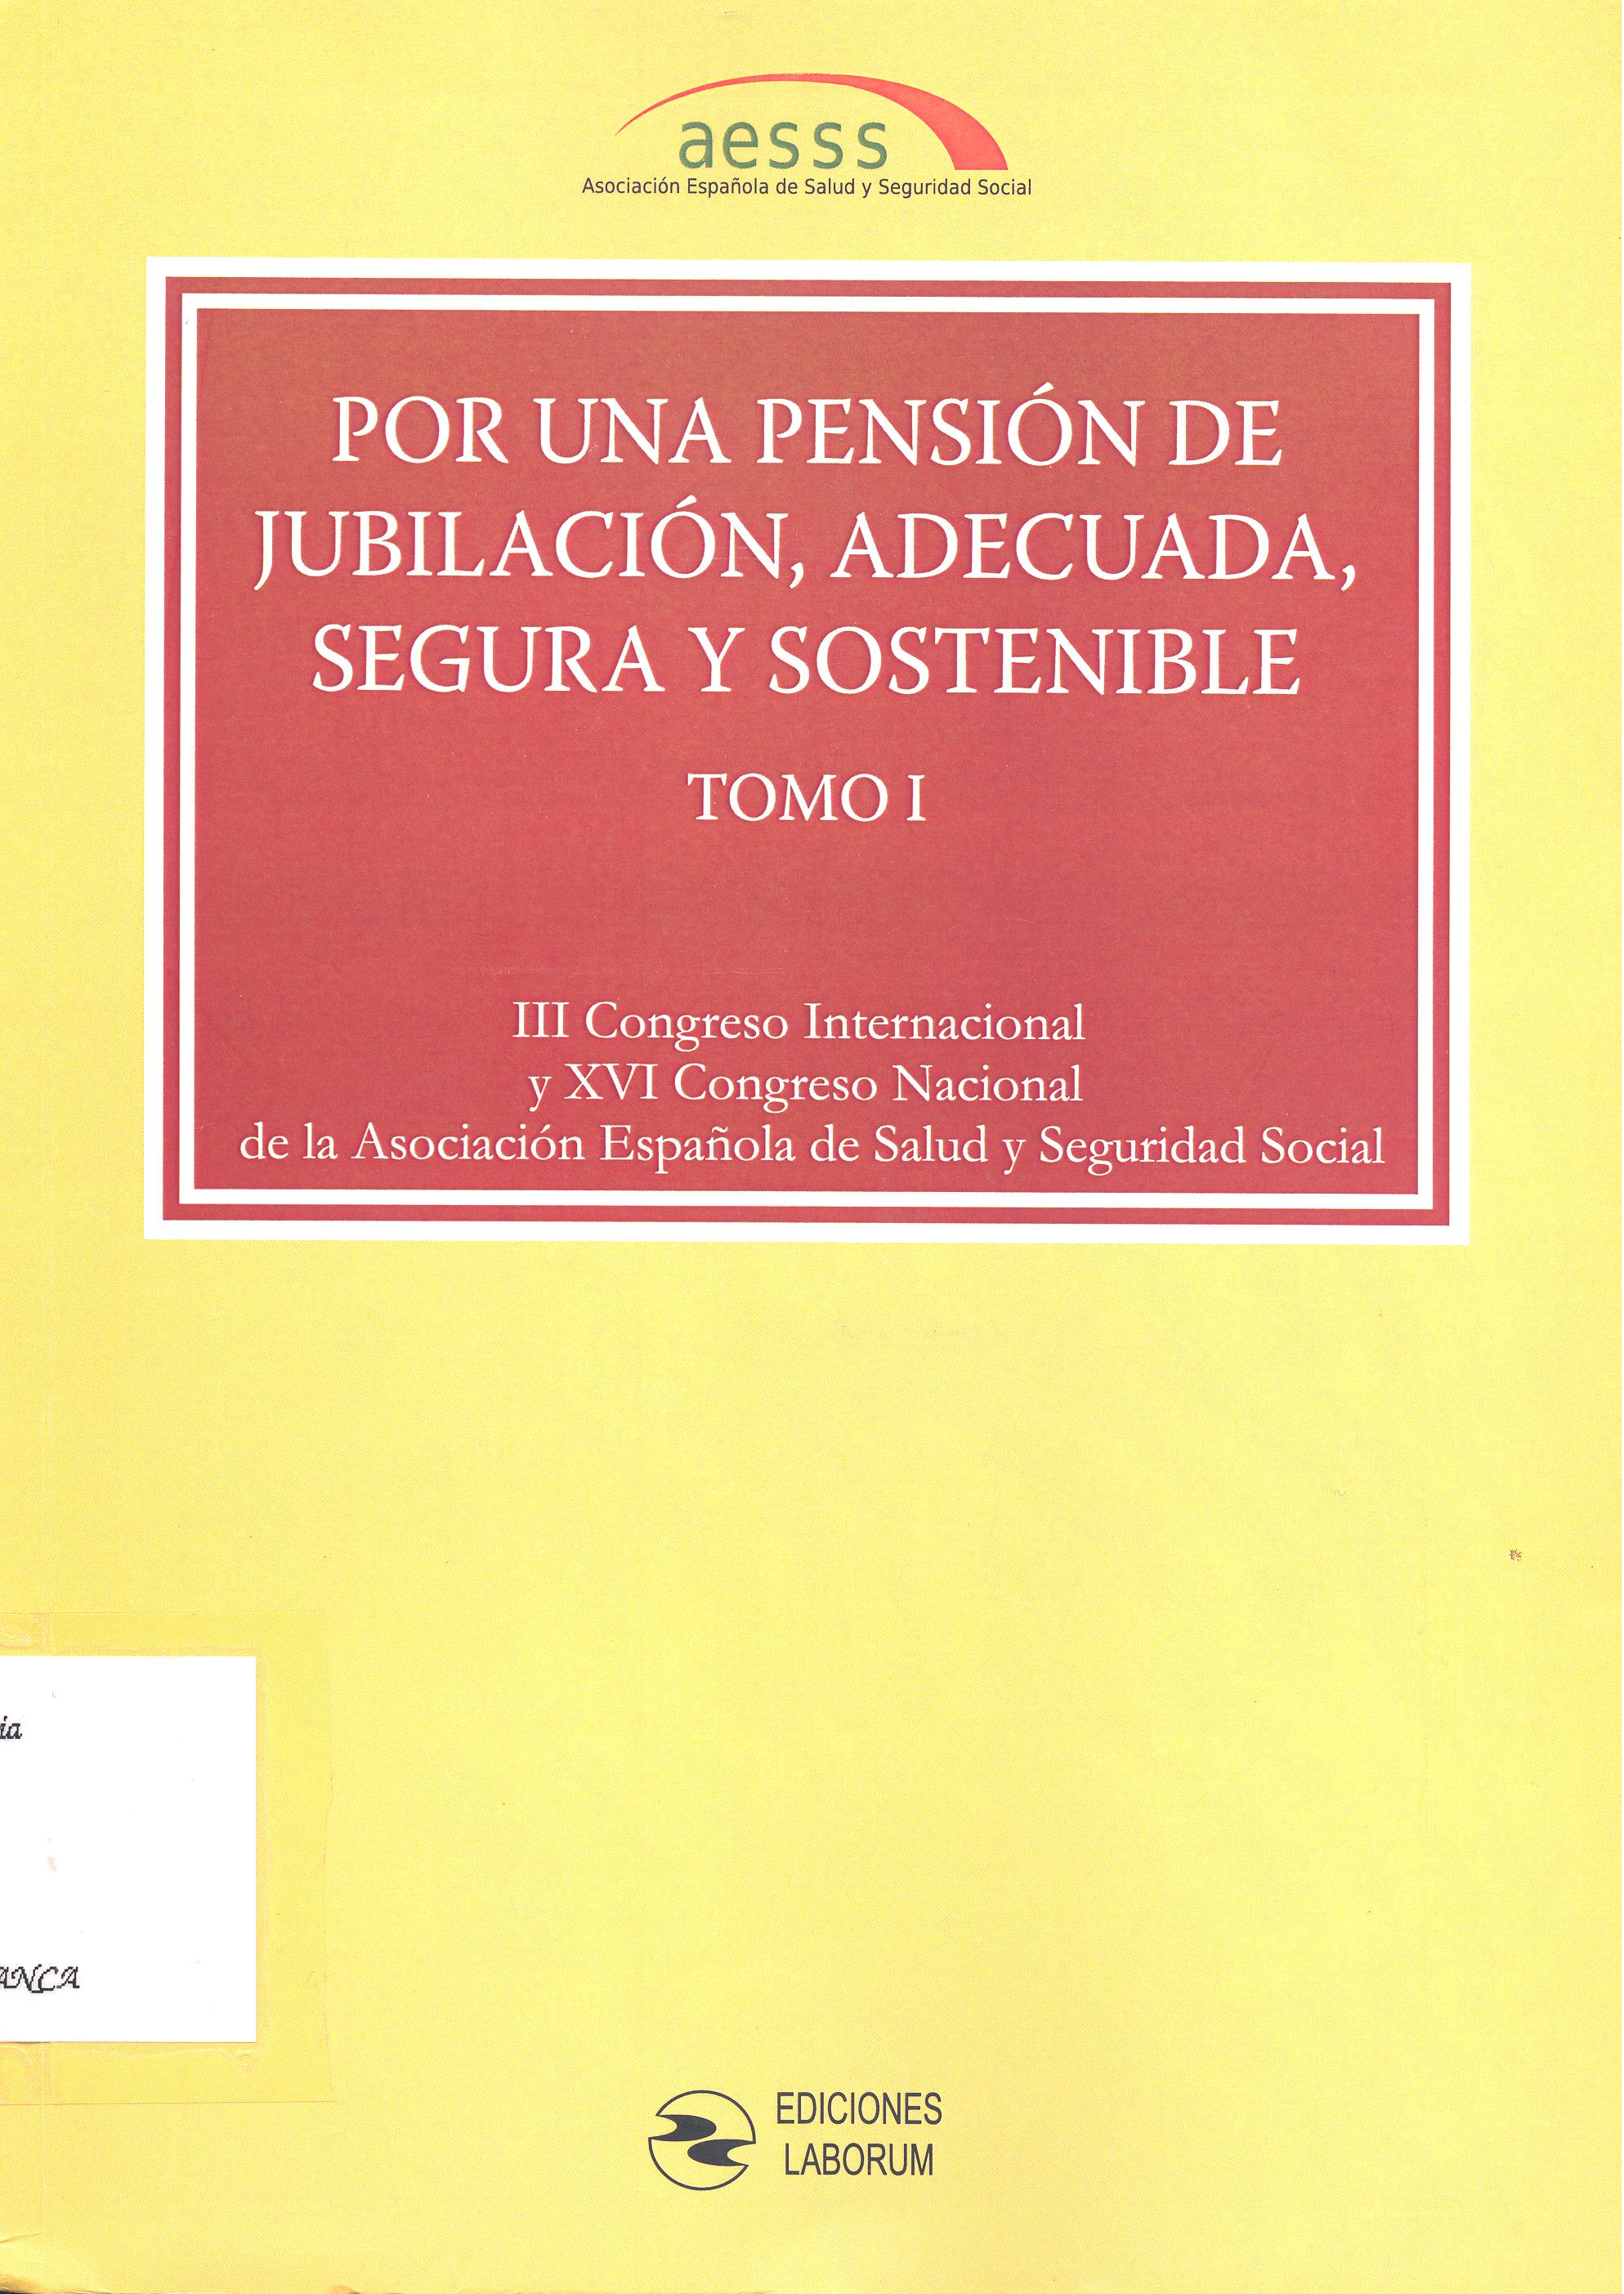 Imagen de portada del libro Por una pensión de jubilación, adecuada, segura y sostenible